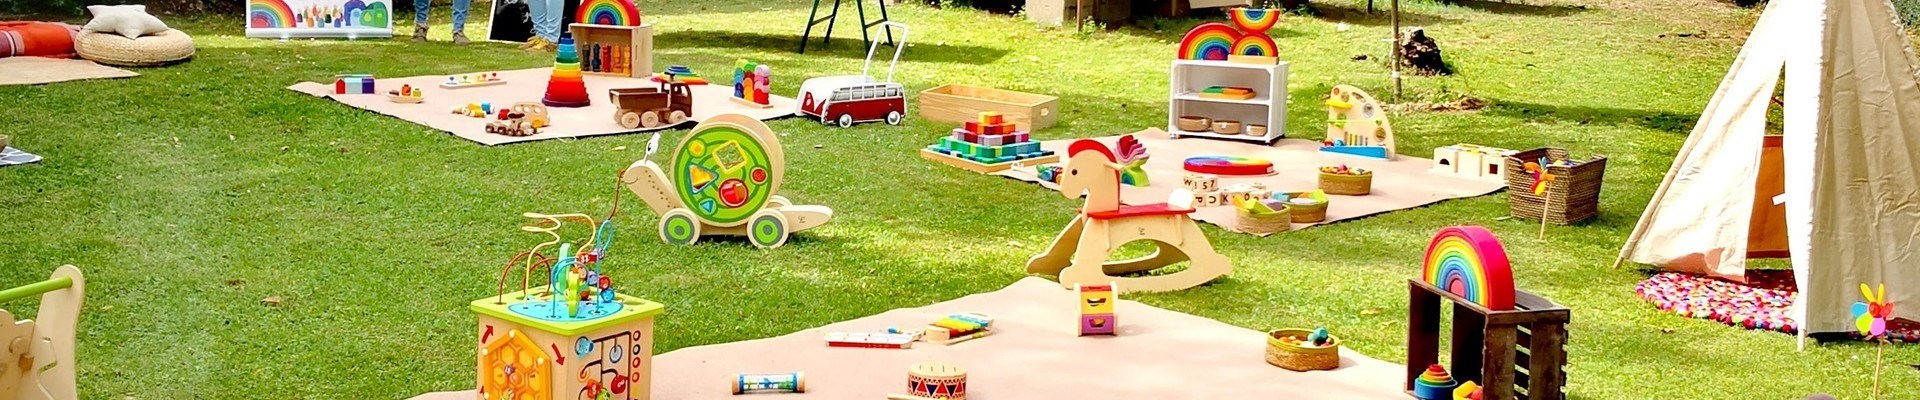 Comprar juguetes decorativos ecológicos para niños | Veobio